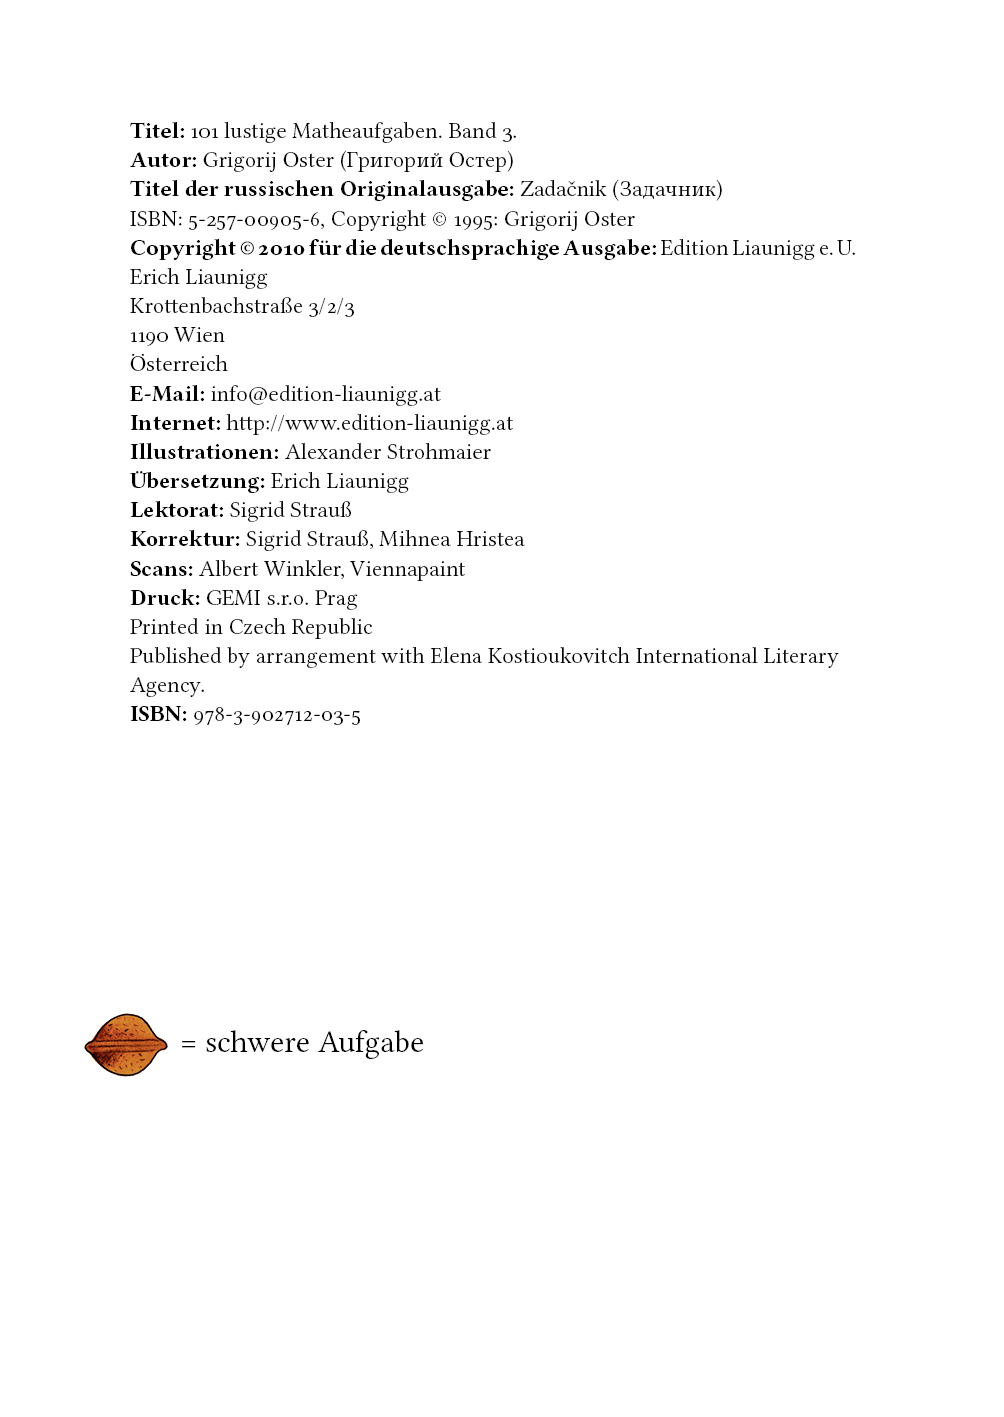 Matheaufgaben Bd. 3